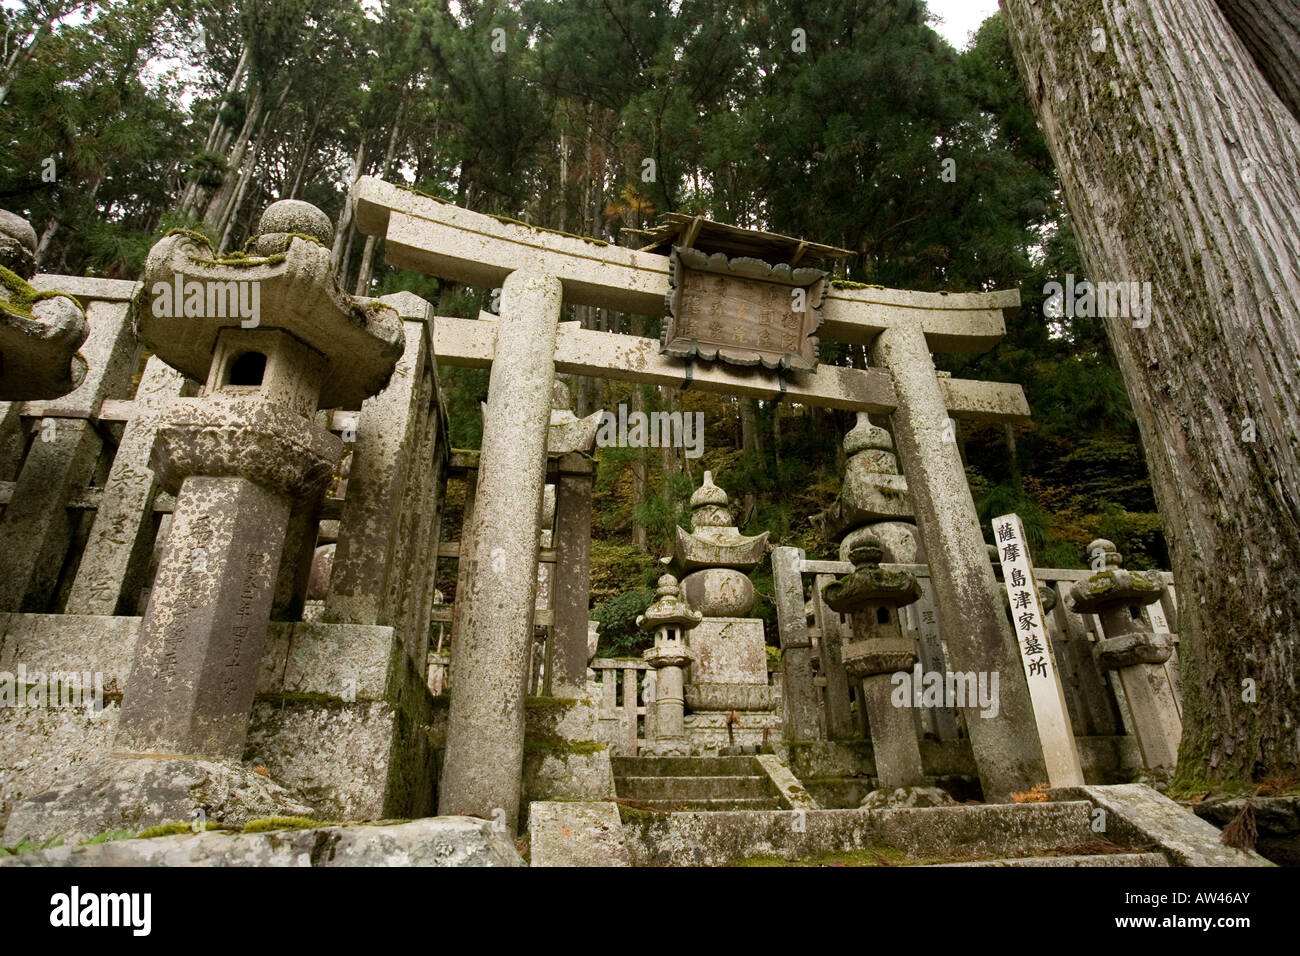 Koyasan cimitero in cui tombe e cippi commemorare shogunato e i signori della guerra del Giappone antico. Foto Stock